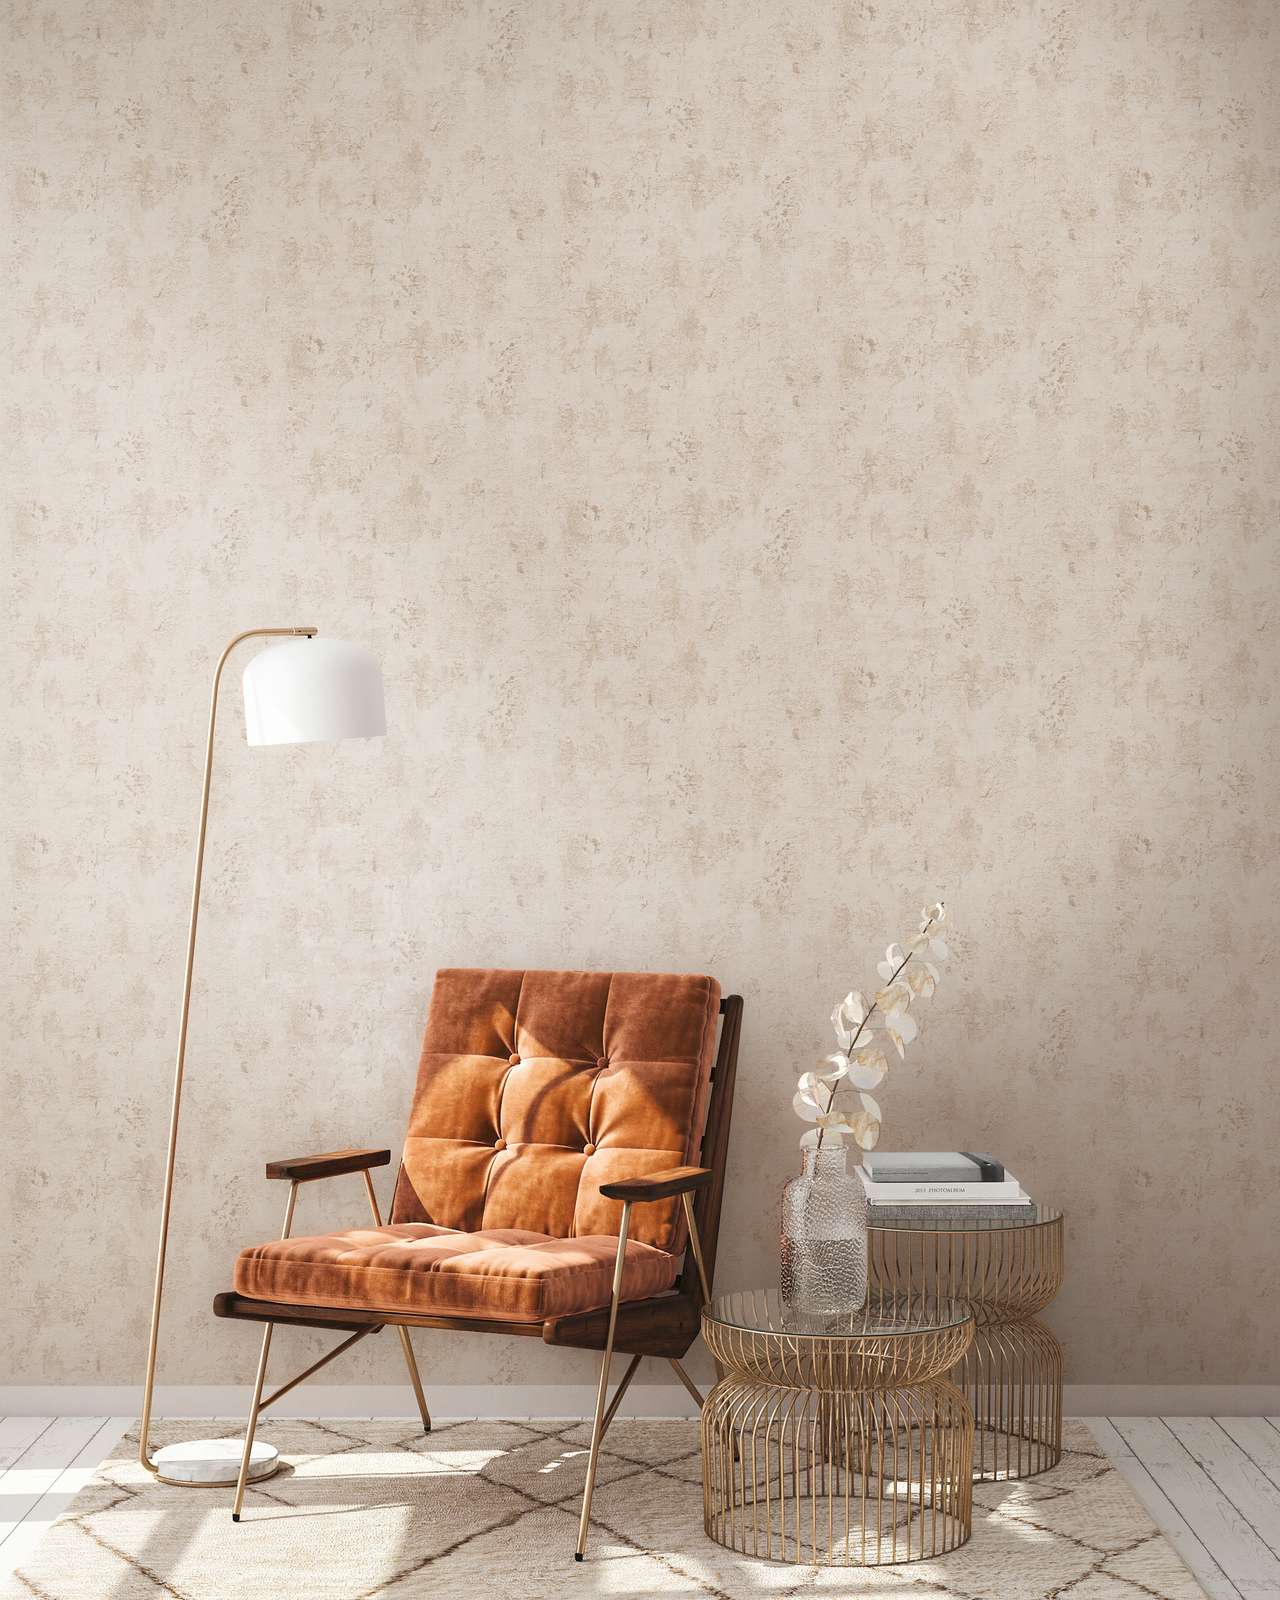             Beige wallpaper with rustic texture design in plaster look
        